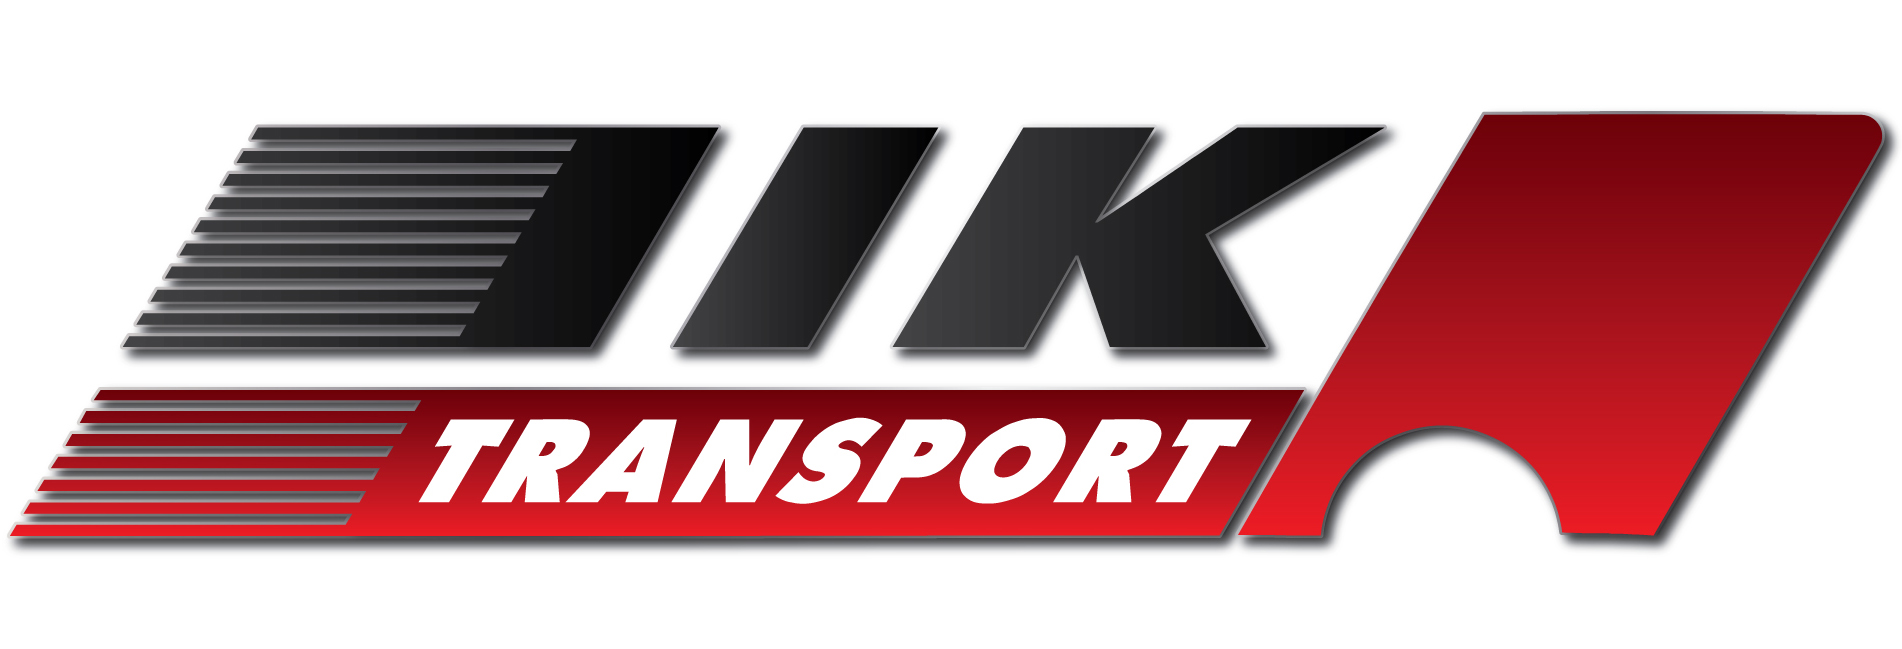 IIKtransport